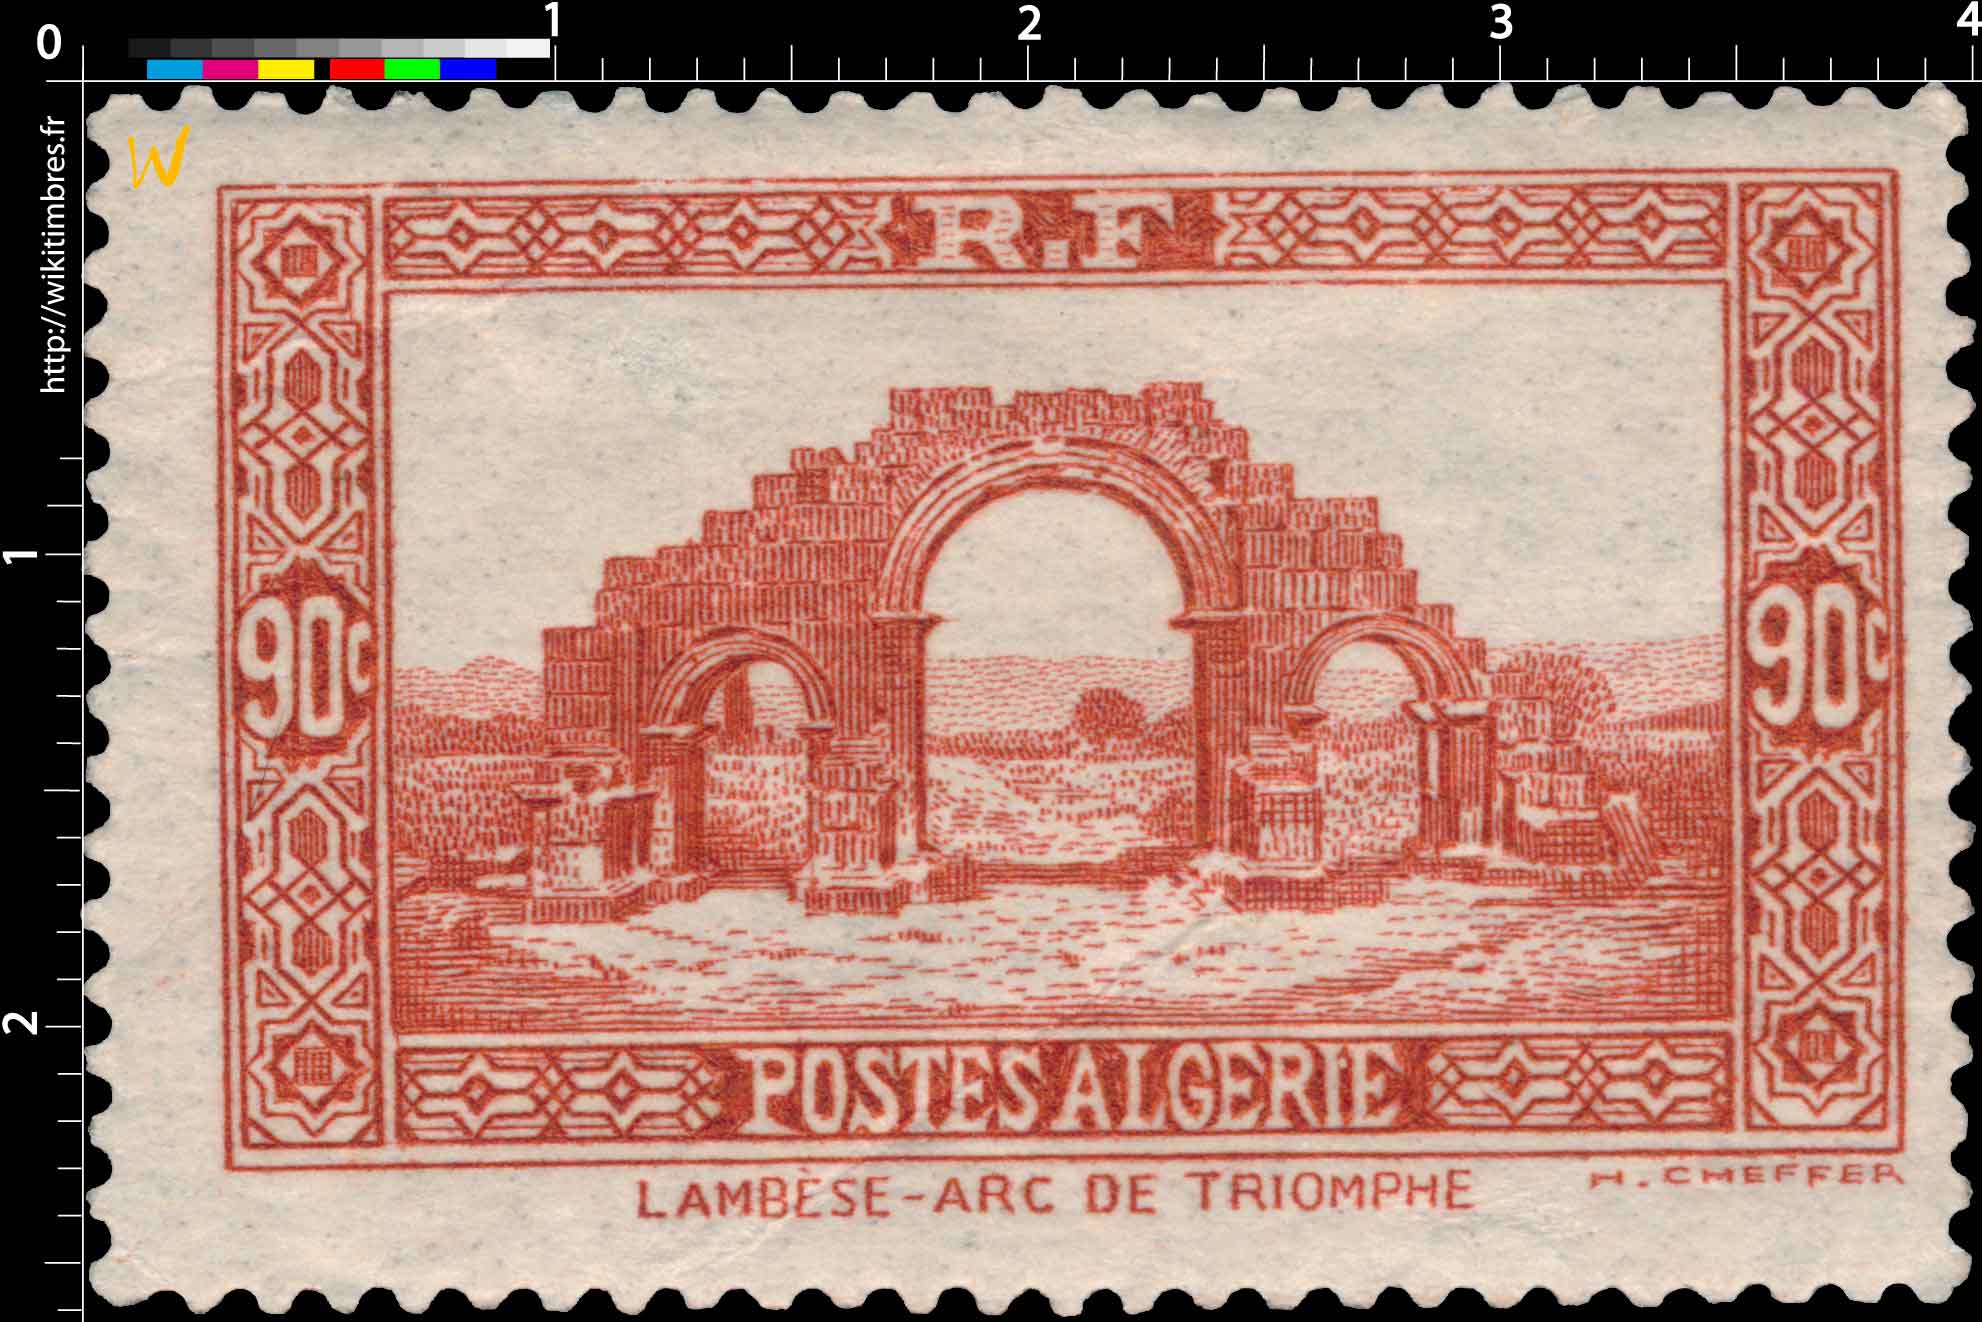 Algérie - Arc de triomphe de Lambèse